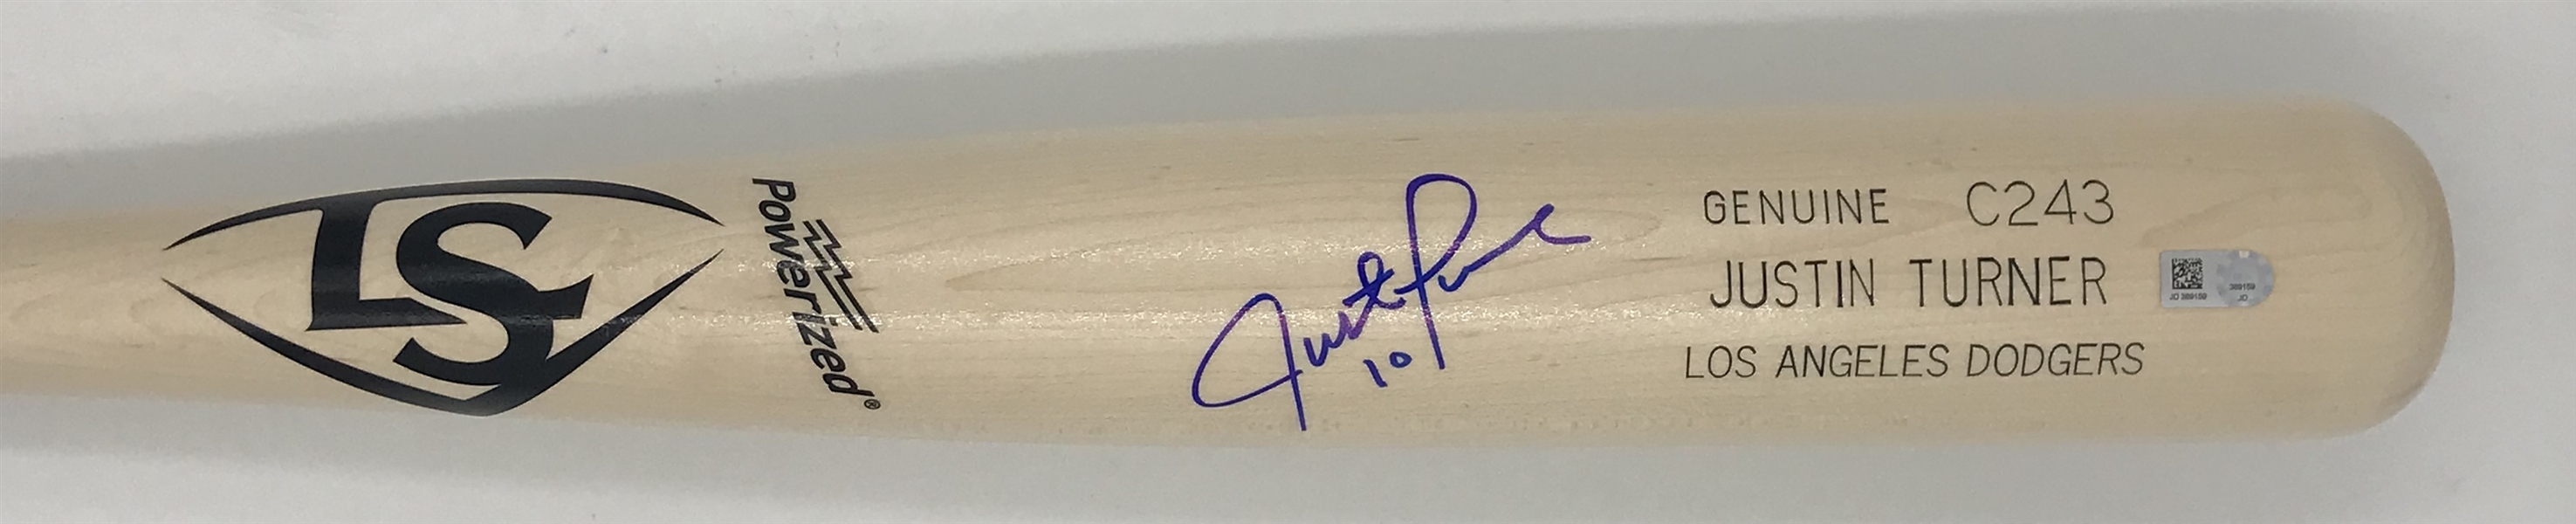 Justin Turner LA Dodgers Signed Bat MLB Certified